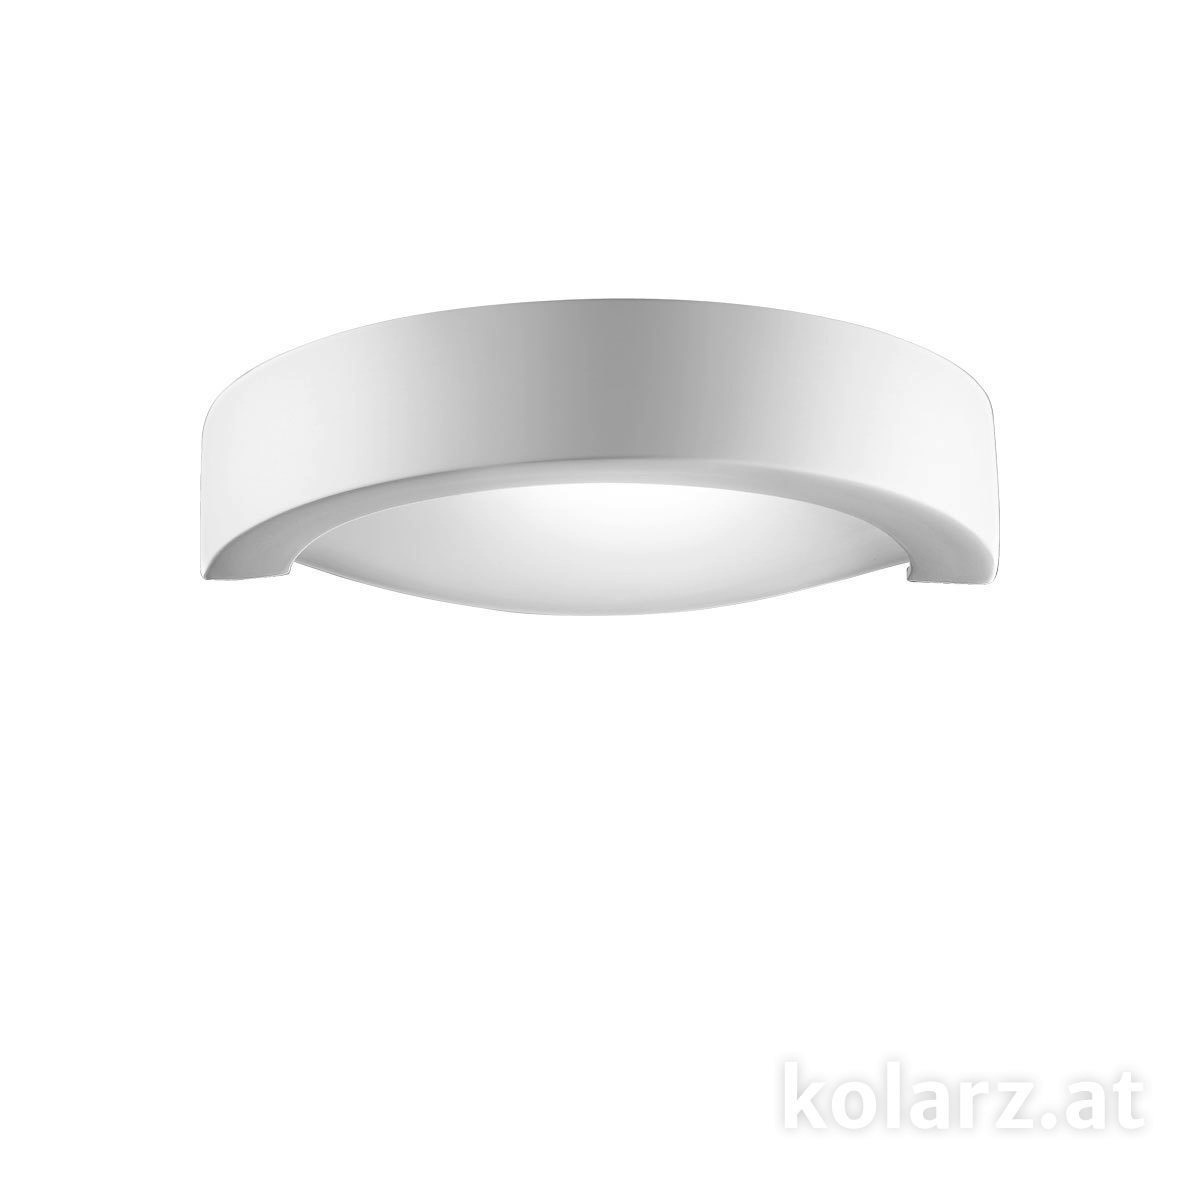 Moderne Wandleuchten & Wandlampen fürs Bad von KOLARZ Leuchten Wandleuchte CASABLANCA 219.63.1